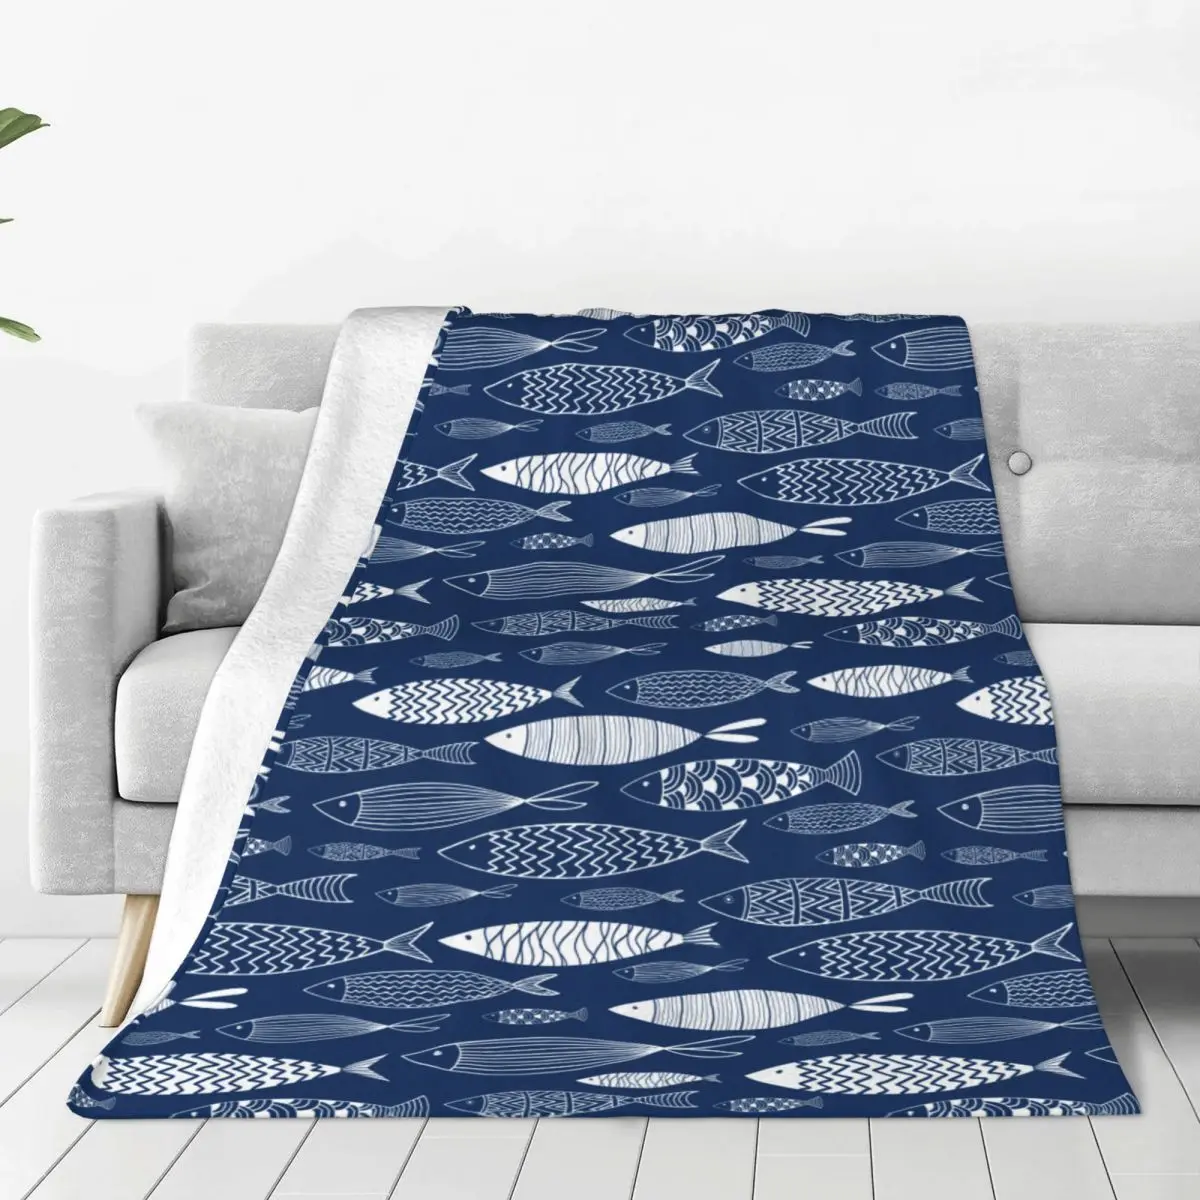 

Флисовое одеяло в виде рыбьего моря, зимнее дышащее ультра-мягкое покрывало s для постельного белья, автомобильное одеяло